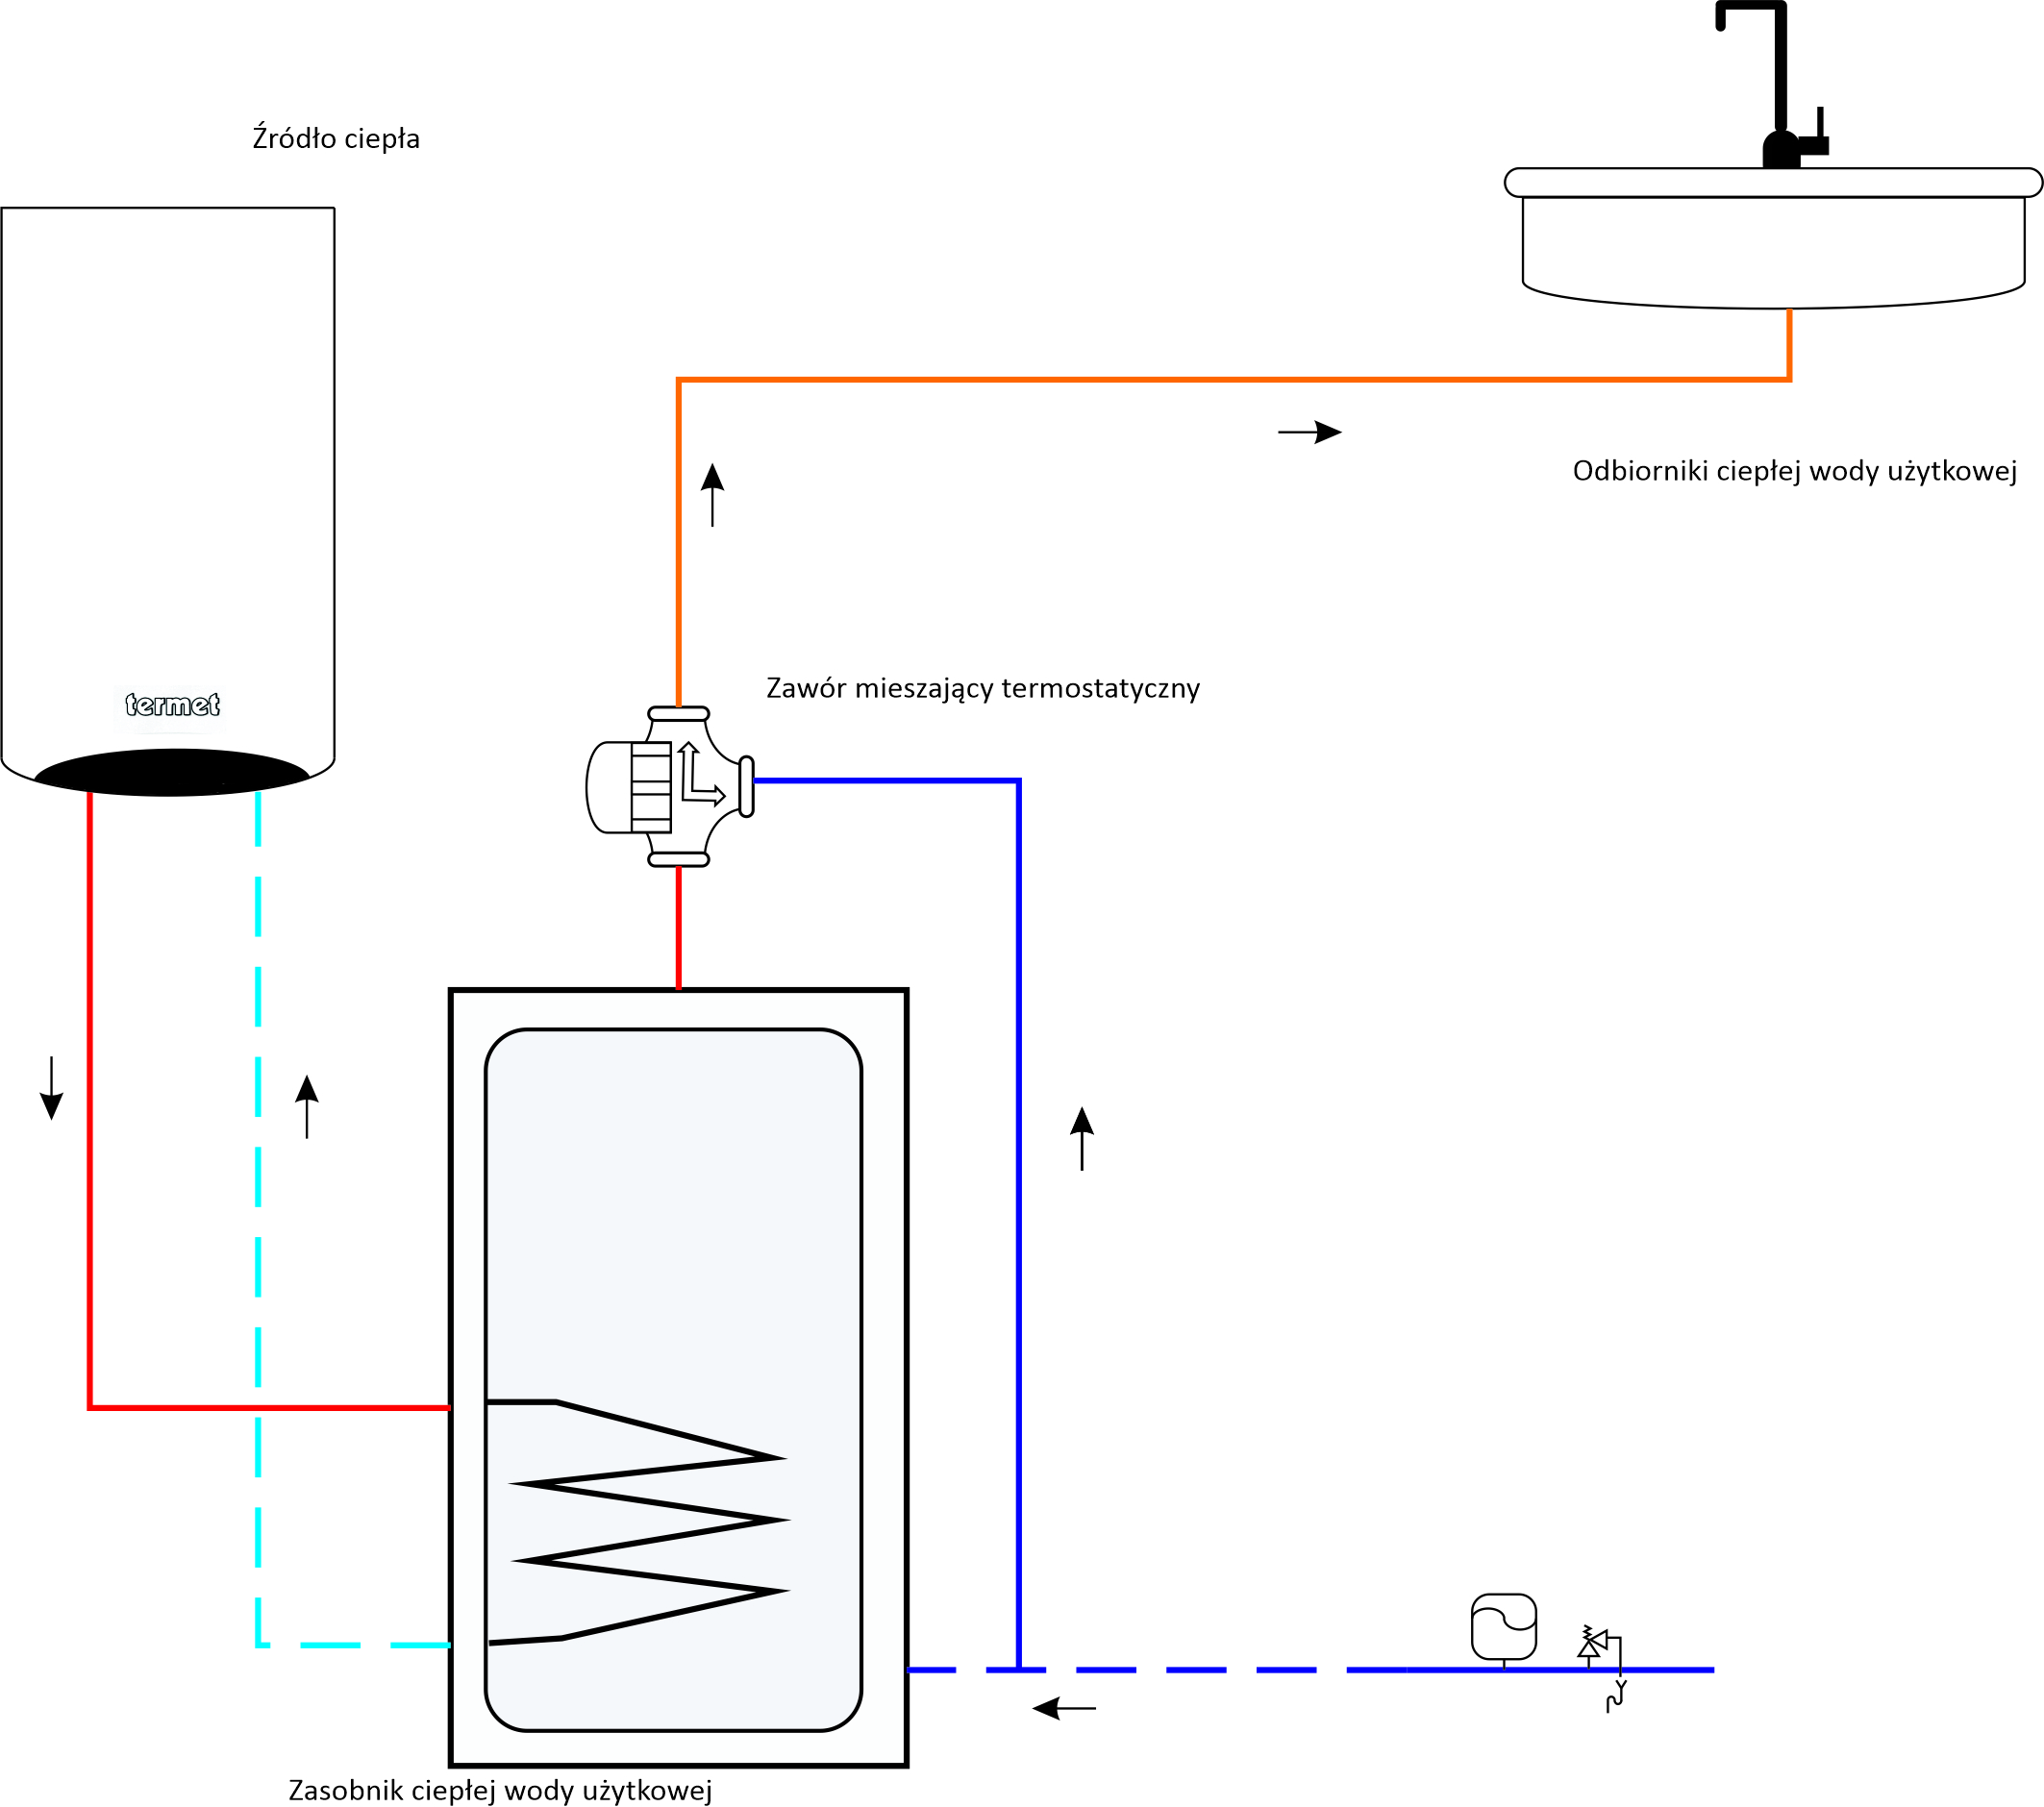 Zawór mieszający C.W.U. – schemat instalacji ciepłej wody użytkowej z zastosowaniem 3-drogowego zaworu termostatycznego (schemat ideowy)